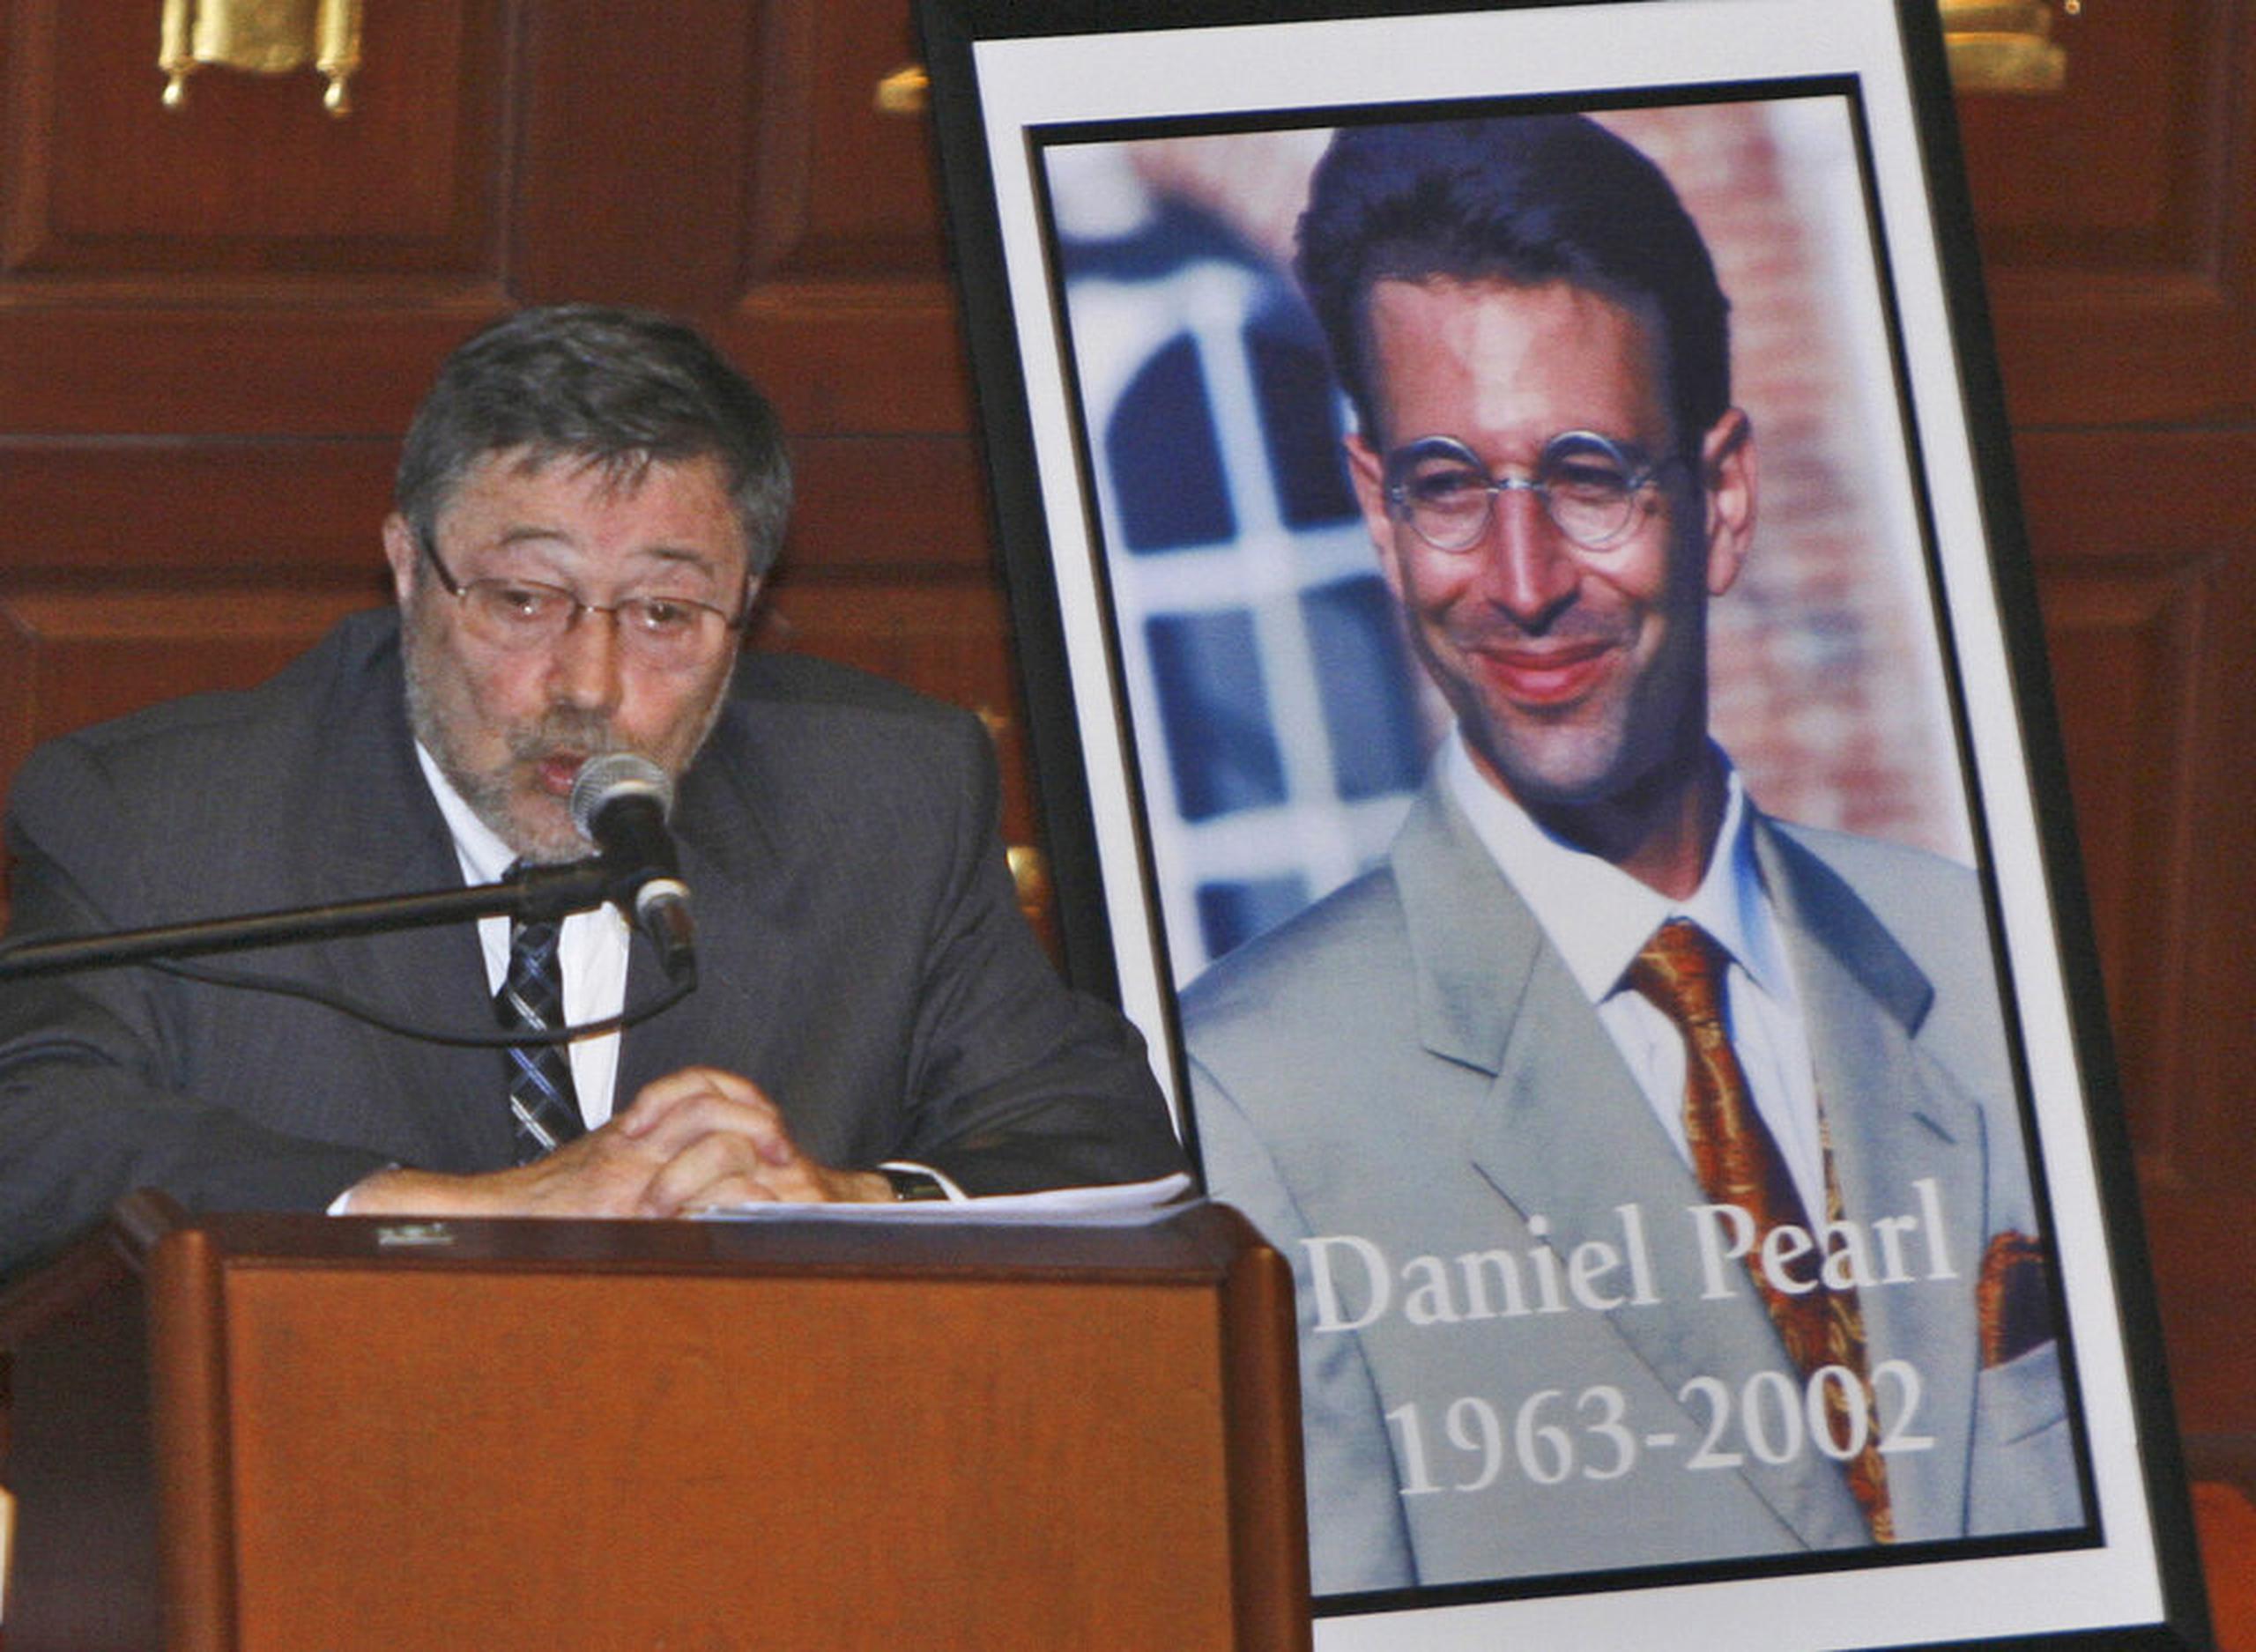 Imagen del 5 de abril de 2007, en la que aparece Judea Pearl, padre del periodista Daniel Pearl, hablando en Miami Beach, Florida.